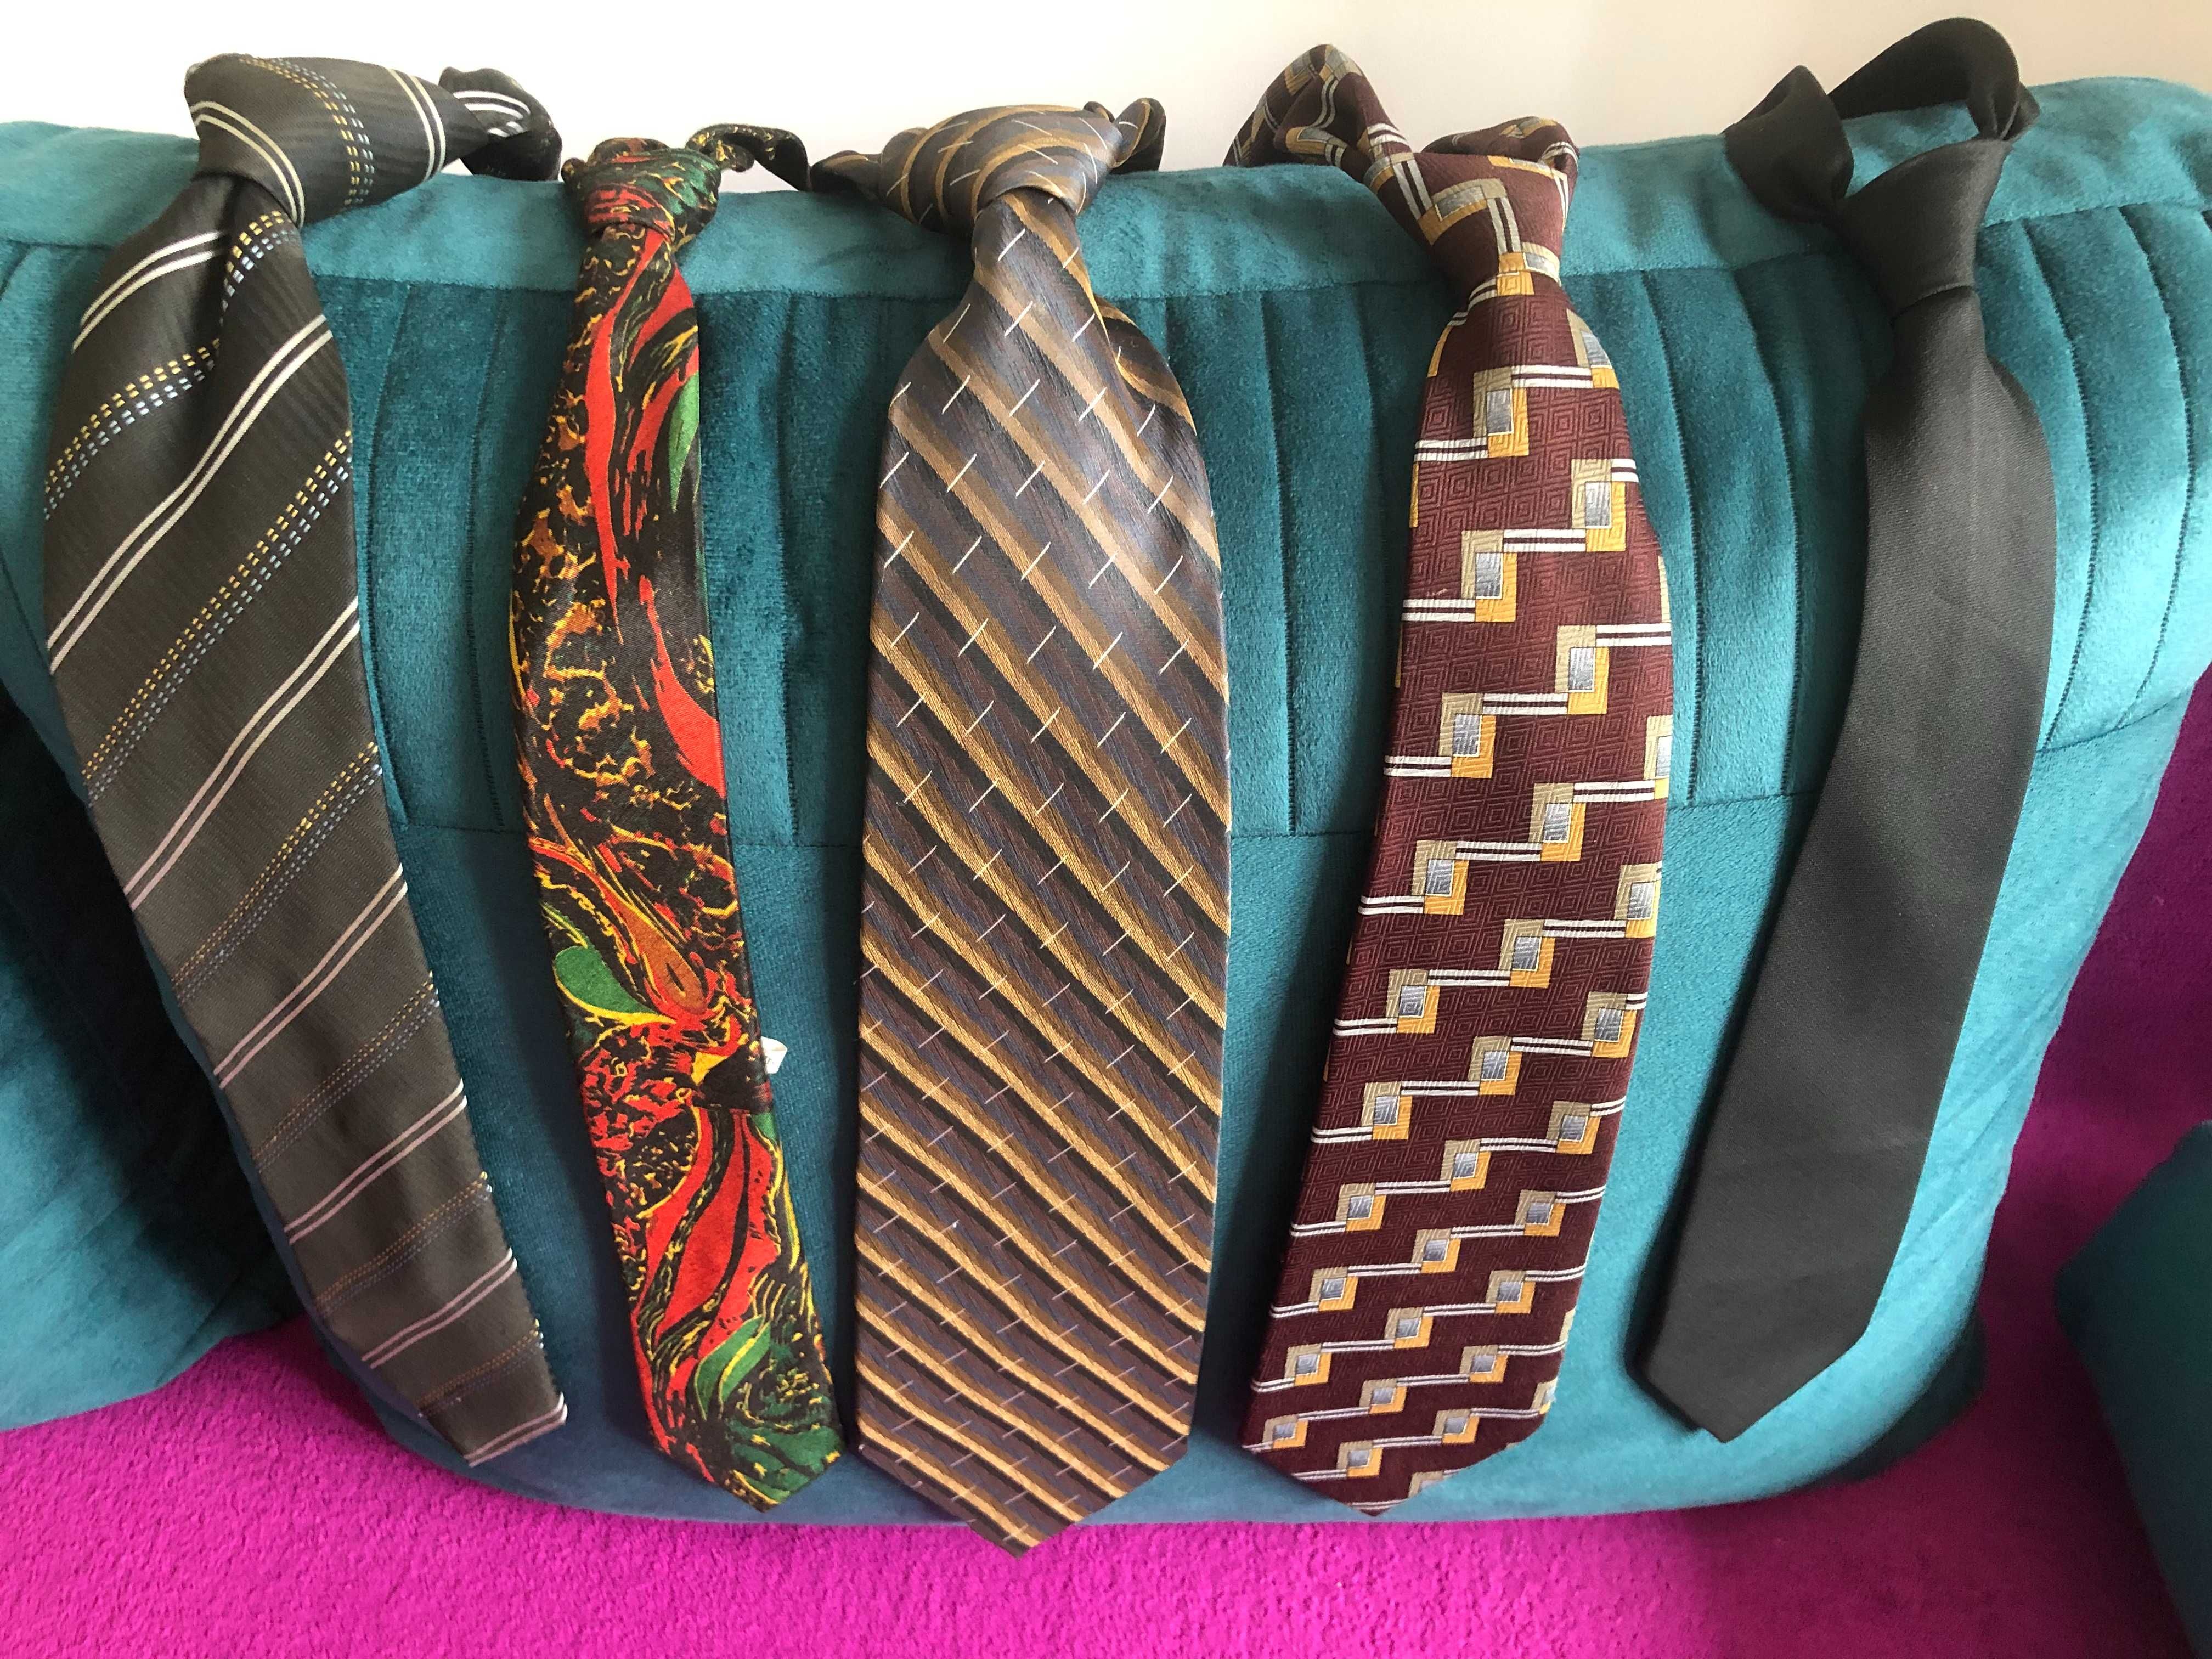 Krawaty męskie, jak nowe, różne wzory i kolory (10 szt.) - okazja!